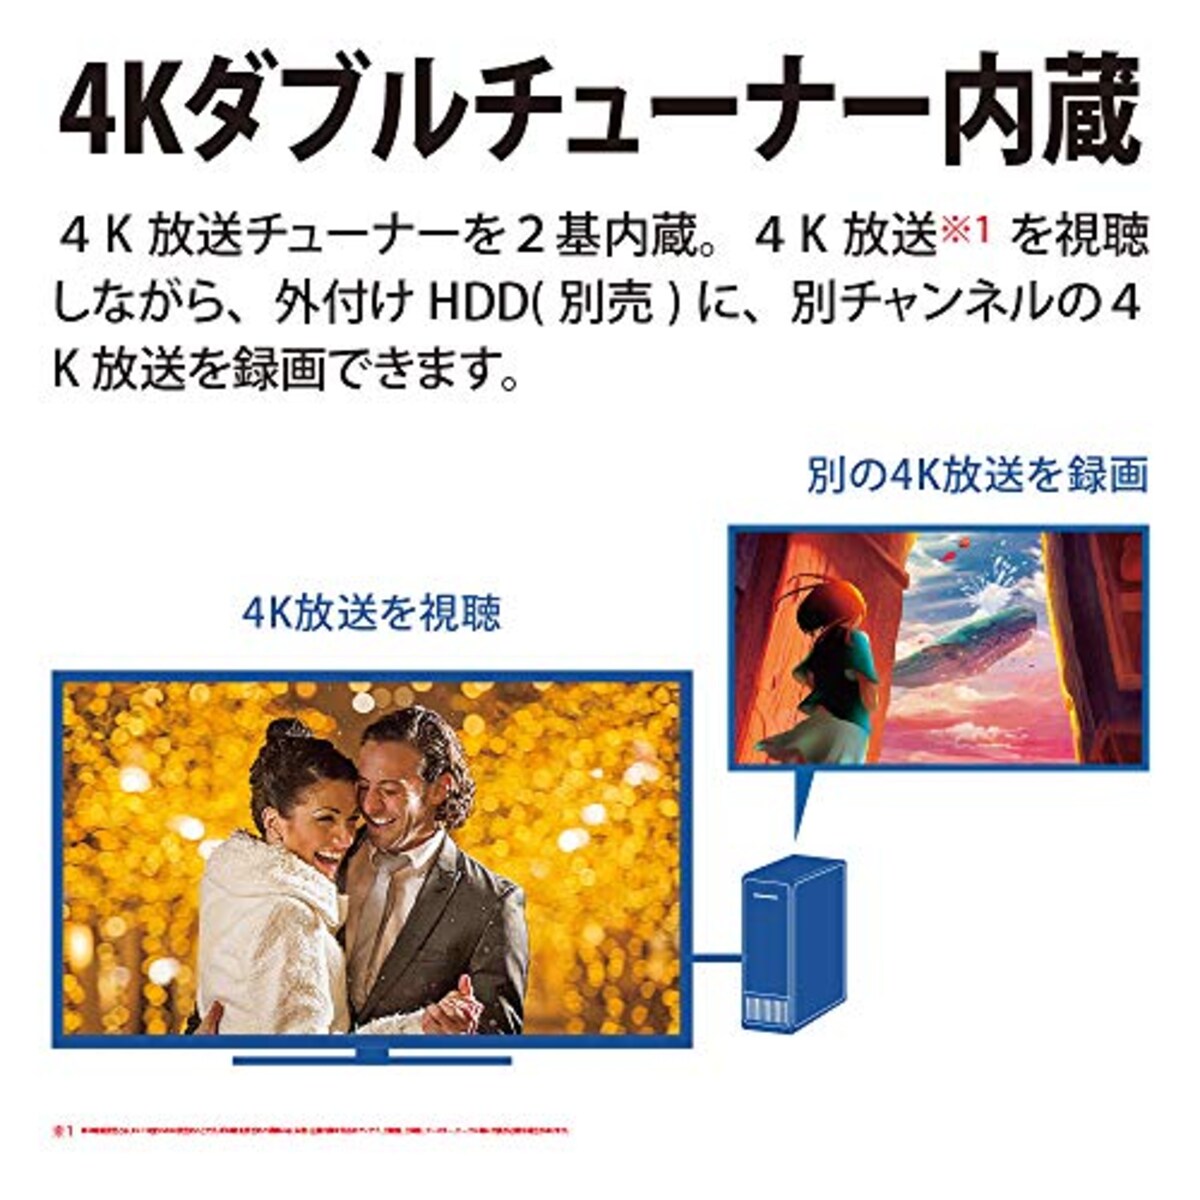  シャープ 55V型 4K 液晶 テレビ AQUOS 4T-C55DN1 N-Blackパネル 倍速液晶 Android TV (2021年モデル)画像15 